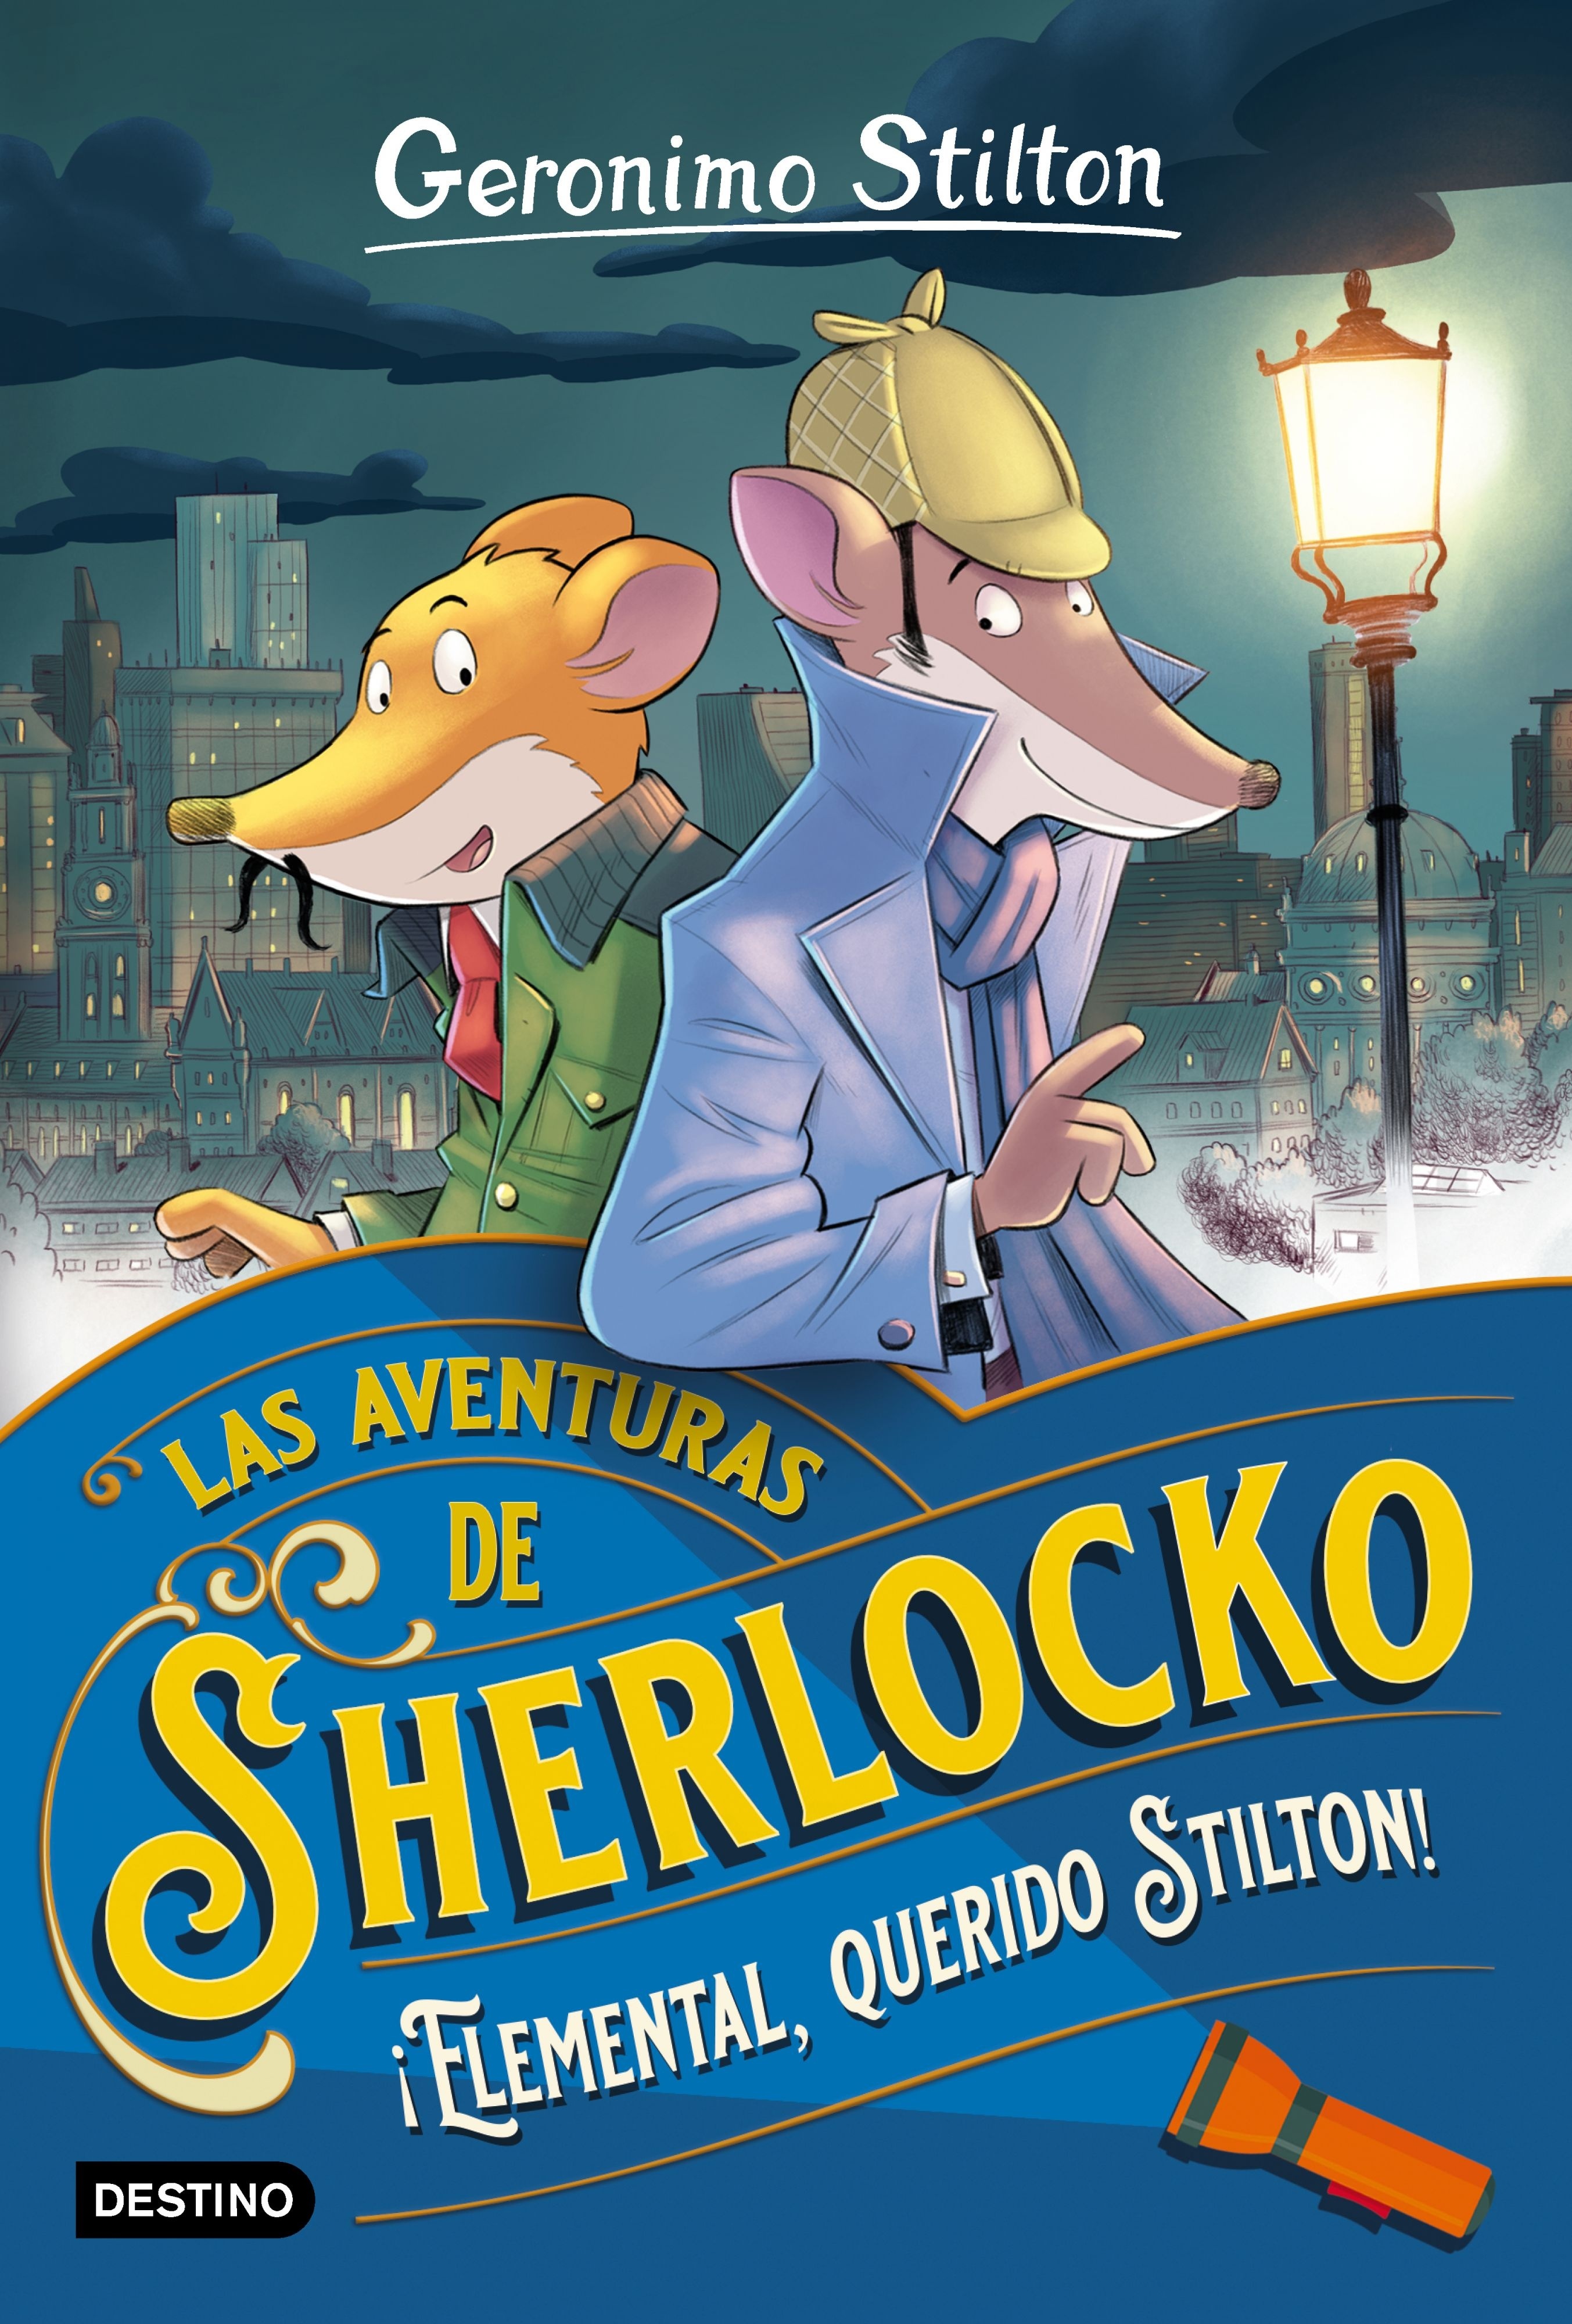 Elemental, querido Stilton! "Las aventuras de Sherlocko". 